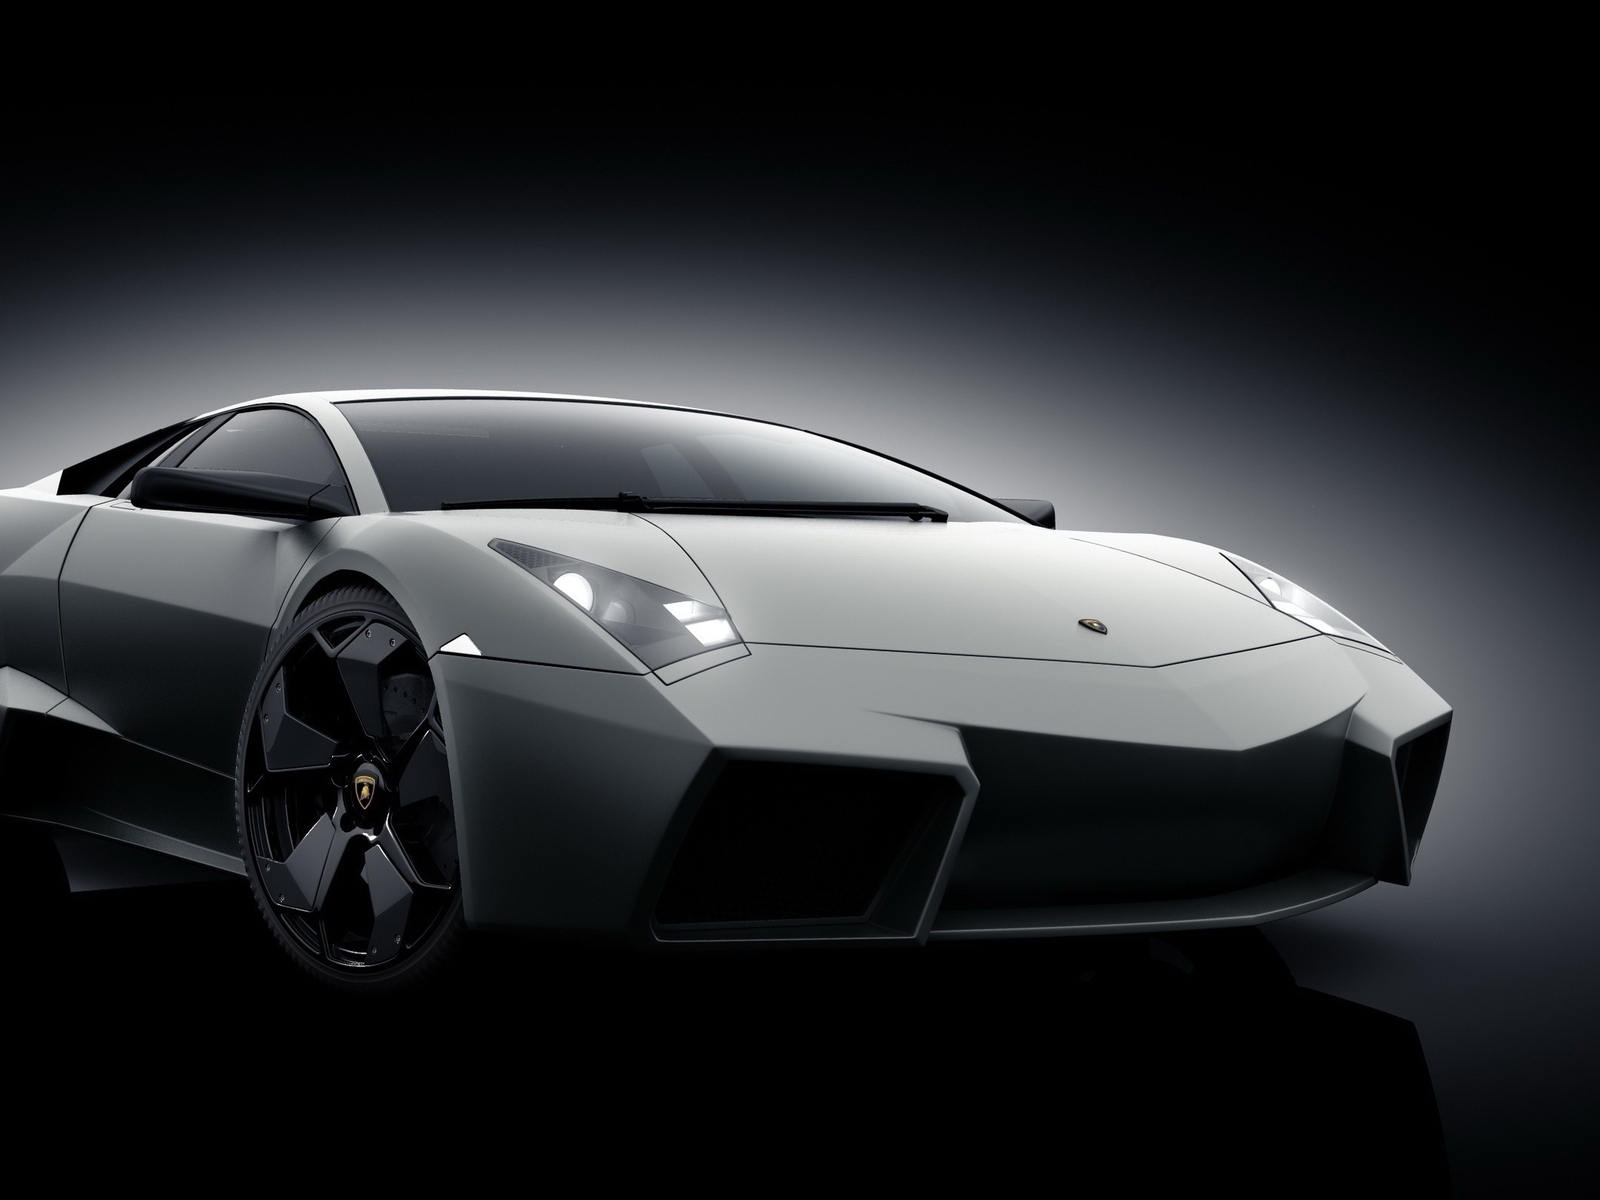 Grey Lamborghini Reventon for 1600 x 1200 resolution